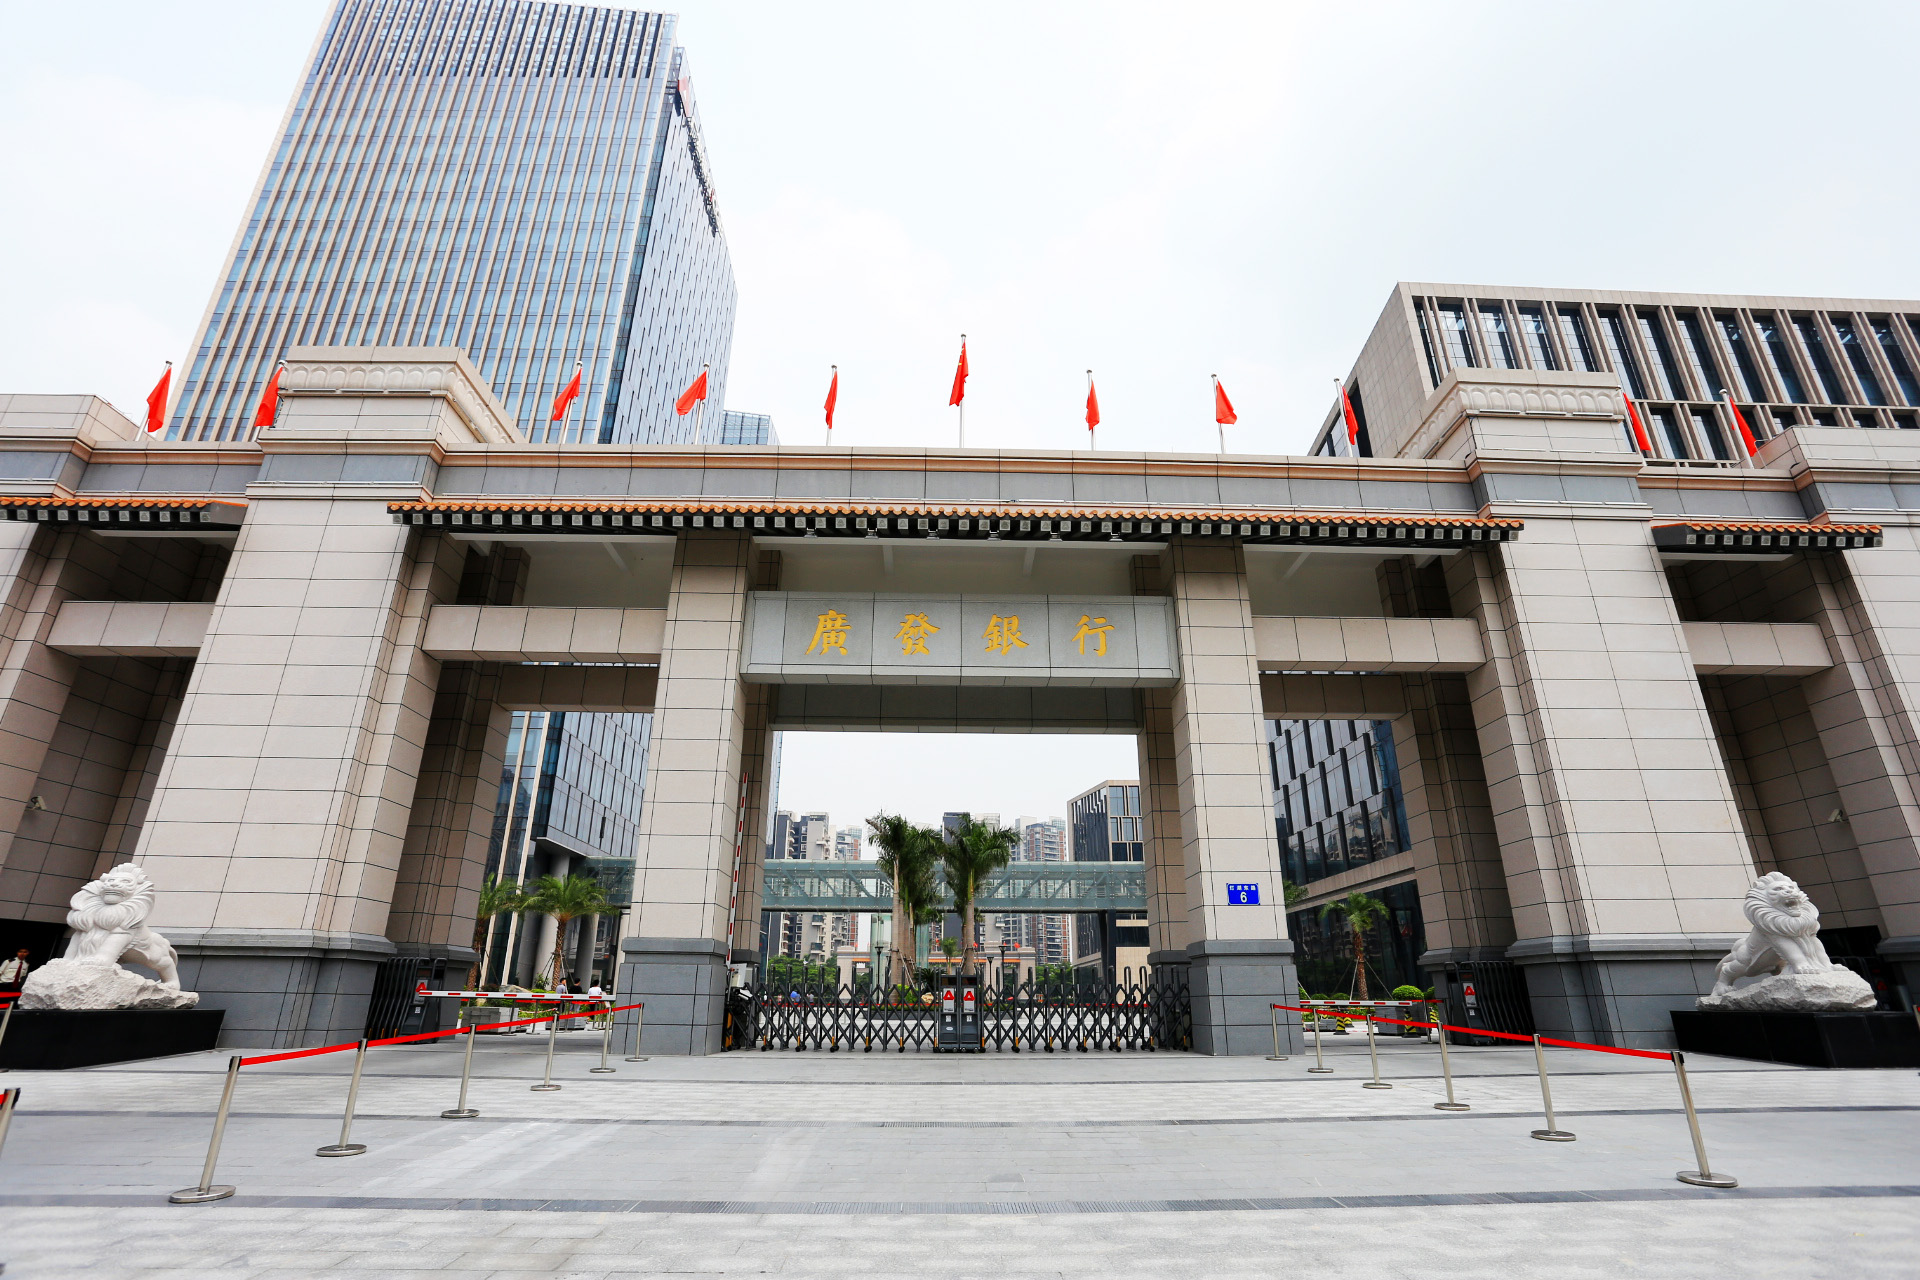 广发银行信用卡中心,简称广发卡,是国内唯一一家总部设在广州的全国性